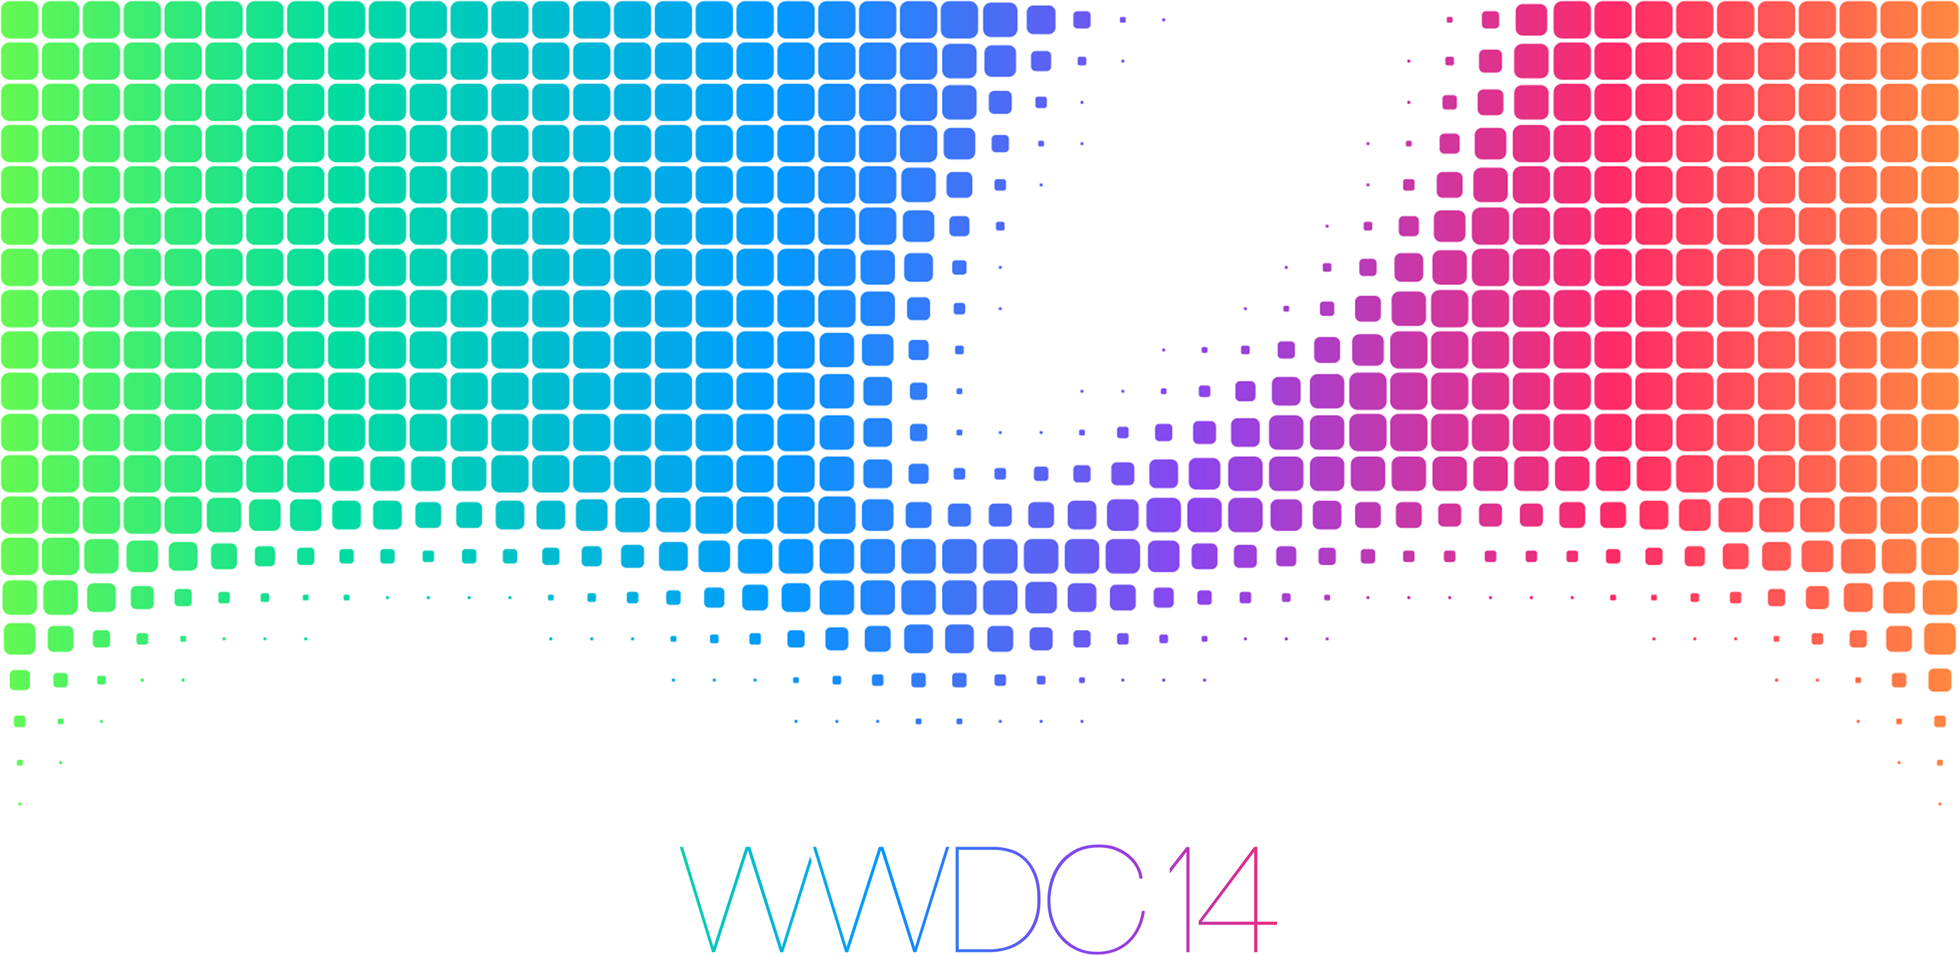 El 2 de Junio será el evento de Apple WWDC 2014